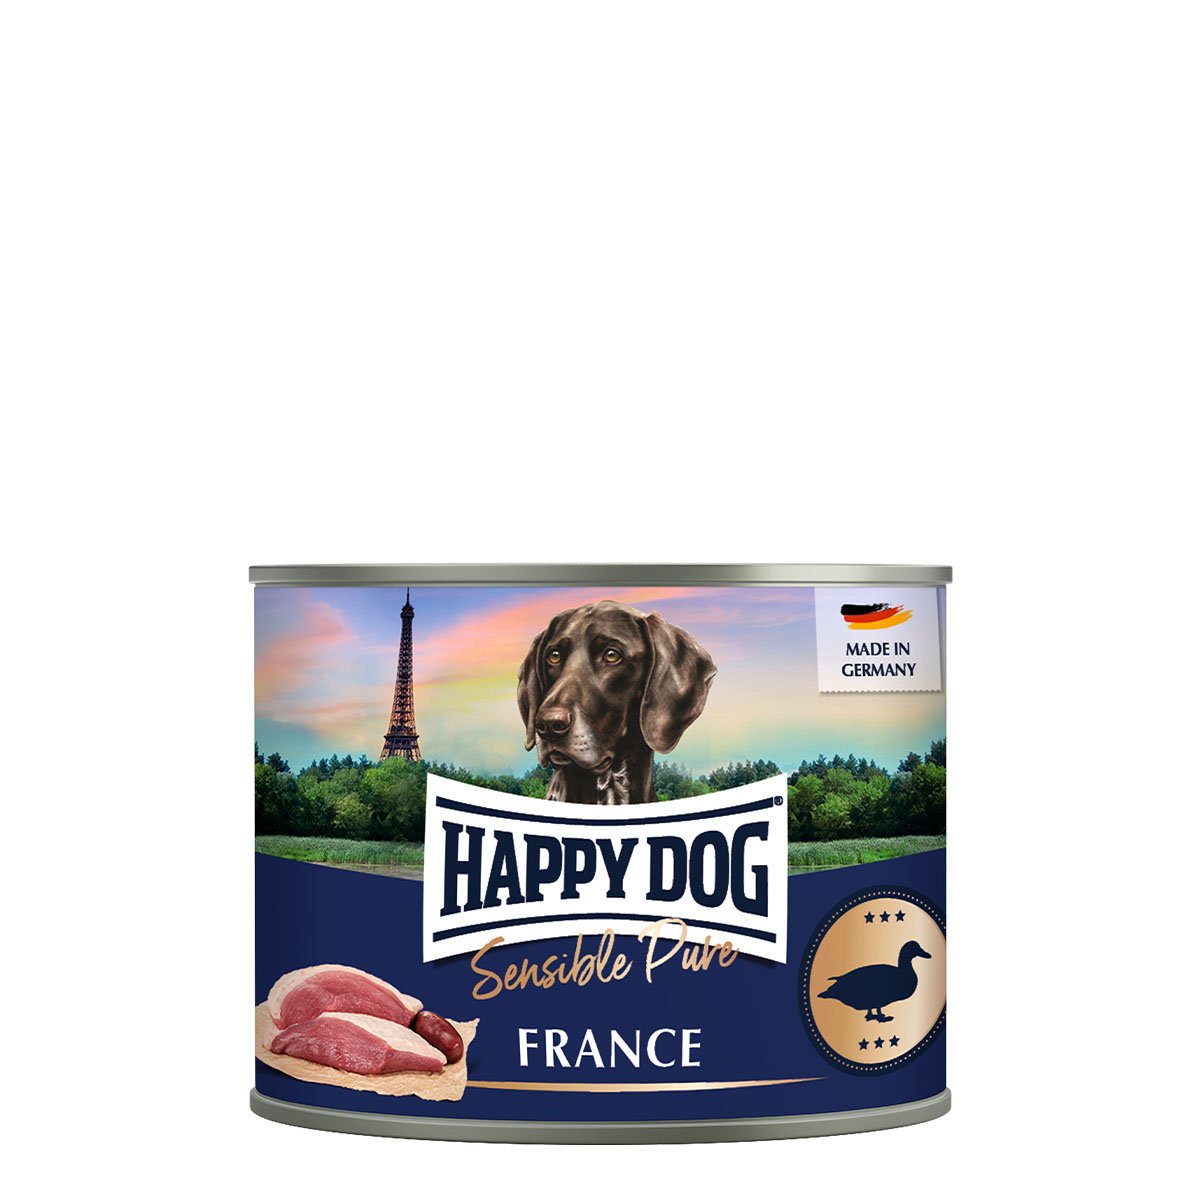 Happy Dog Sensible Pure France (Ente) 12x200g von Happy Dog